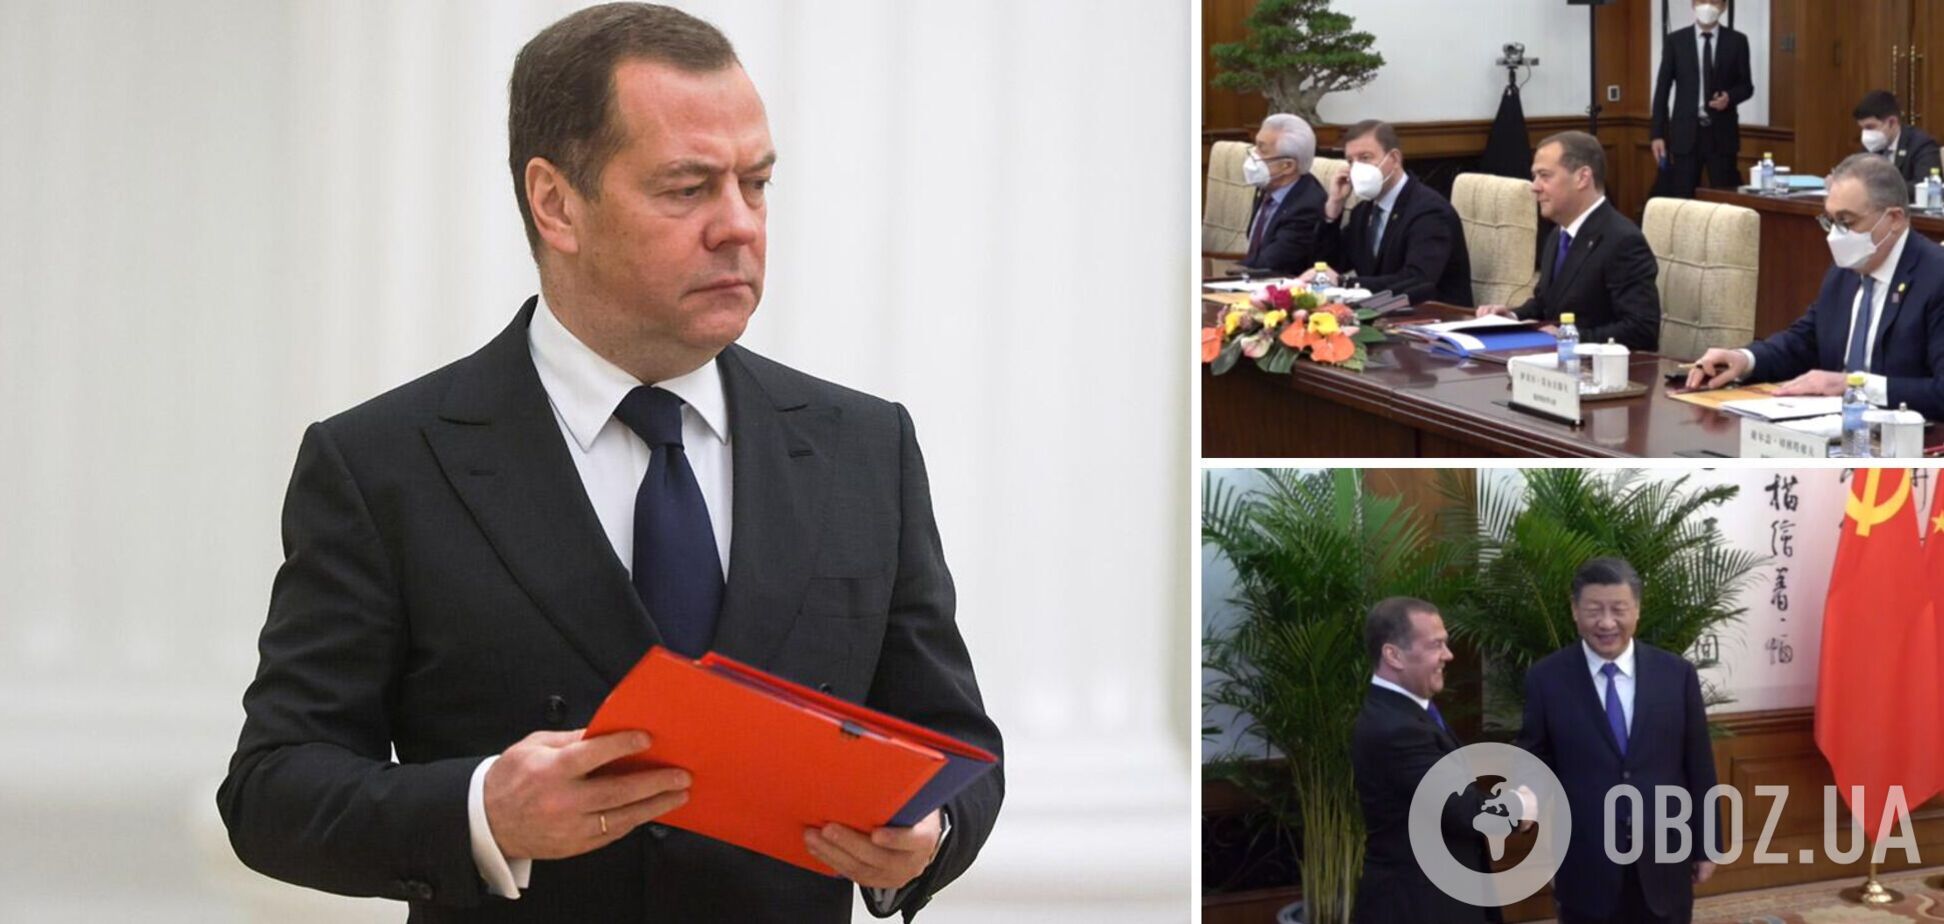 Дмитрий Медведев и Си Цзиньпин провели переговоры